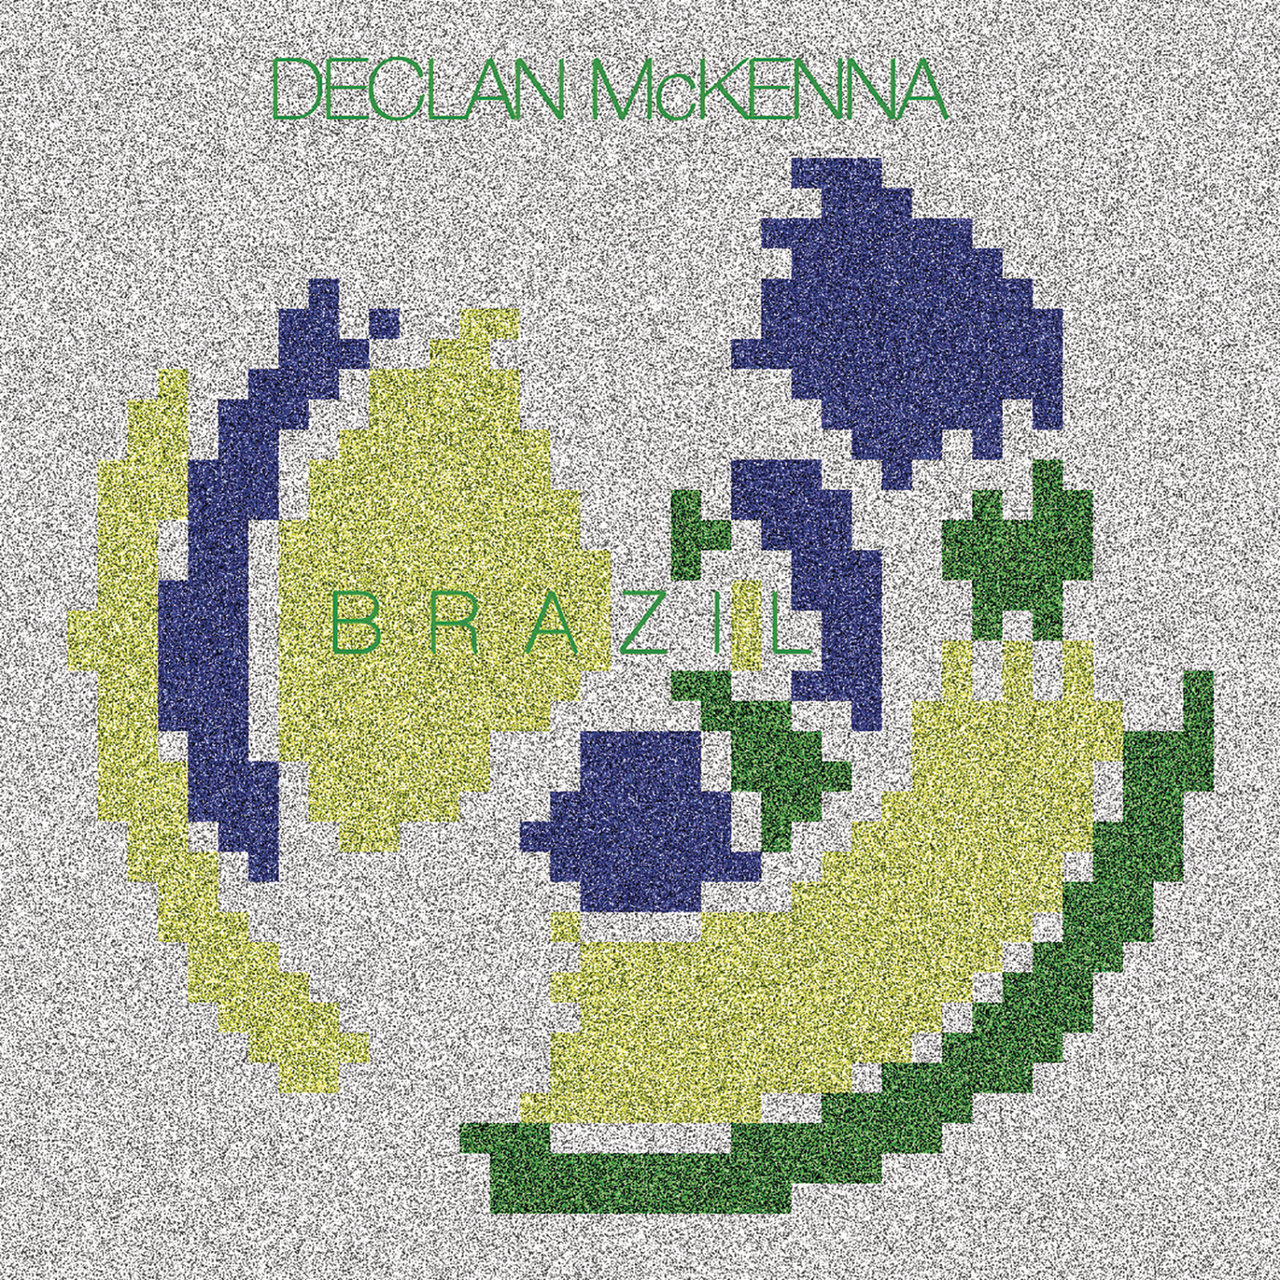 Declan McKenna Brazil cover artwork